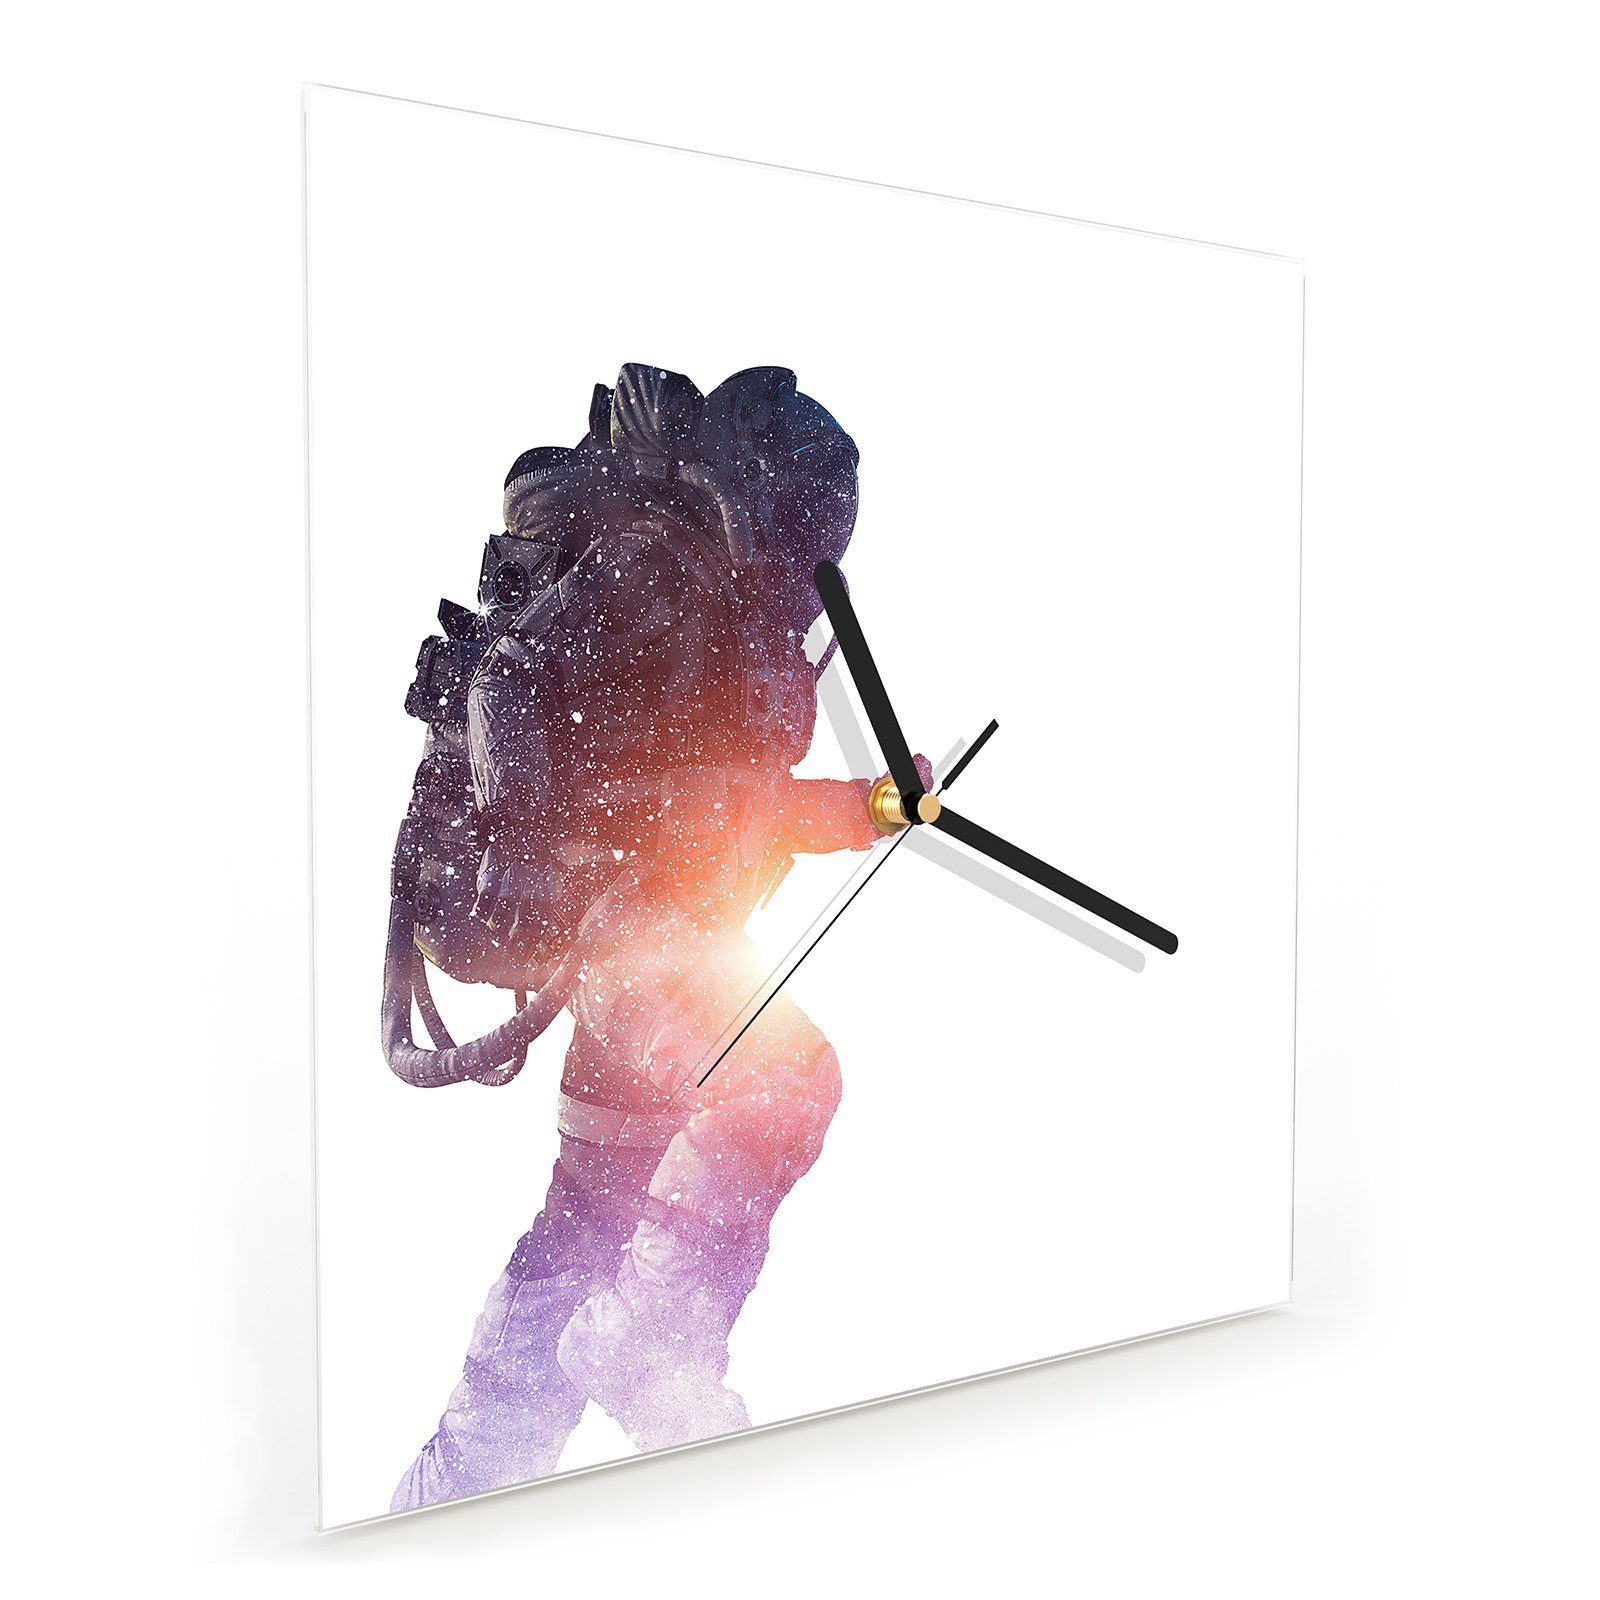 Wanduhr Primedeco Astronaut Motiv cm 30 mit Wandkunst Wanduhr Glasuhr Größe beleuchtet 30 x